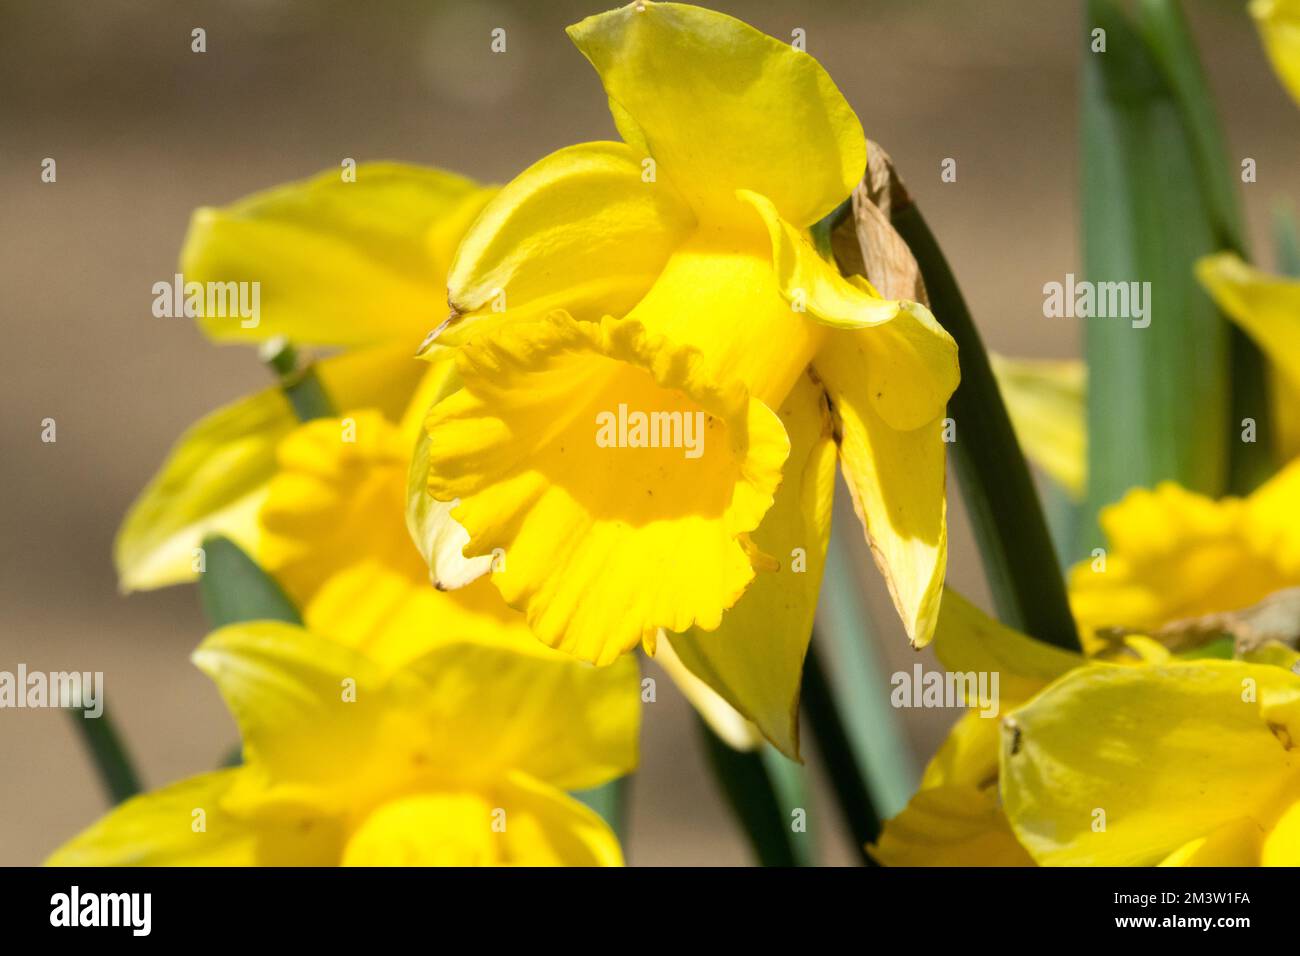 Jaune, Blooms, jonquilles, Narcissus 'Dutch Master' jonquille jaune, Narcissus, jonquille, jardin, printemps, Fleurs Banque D'Images